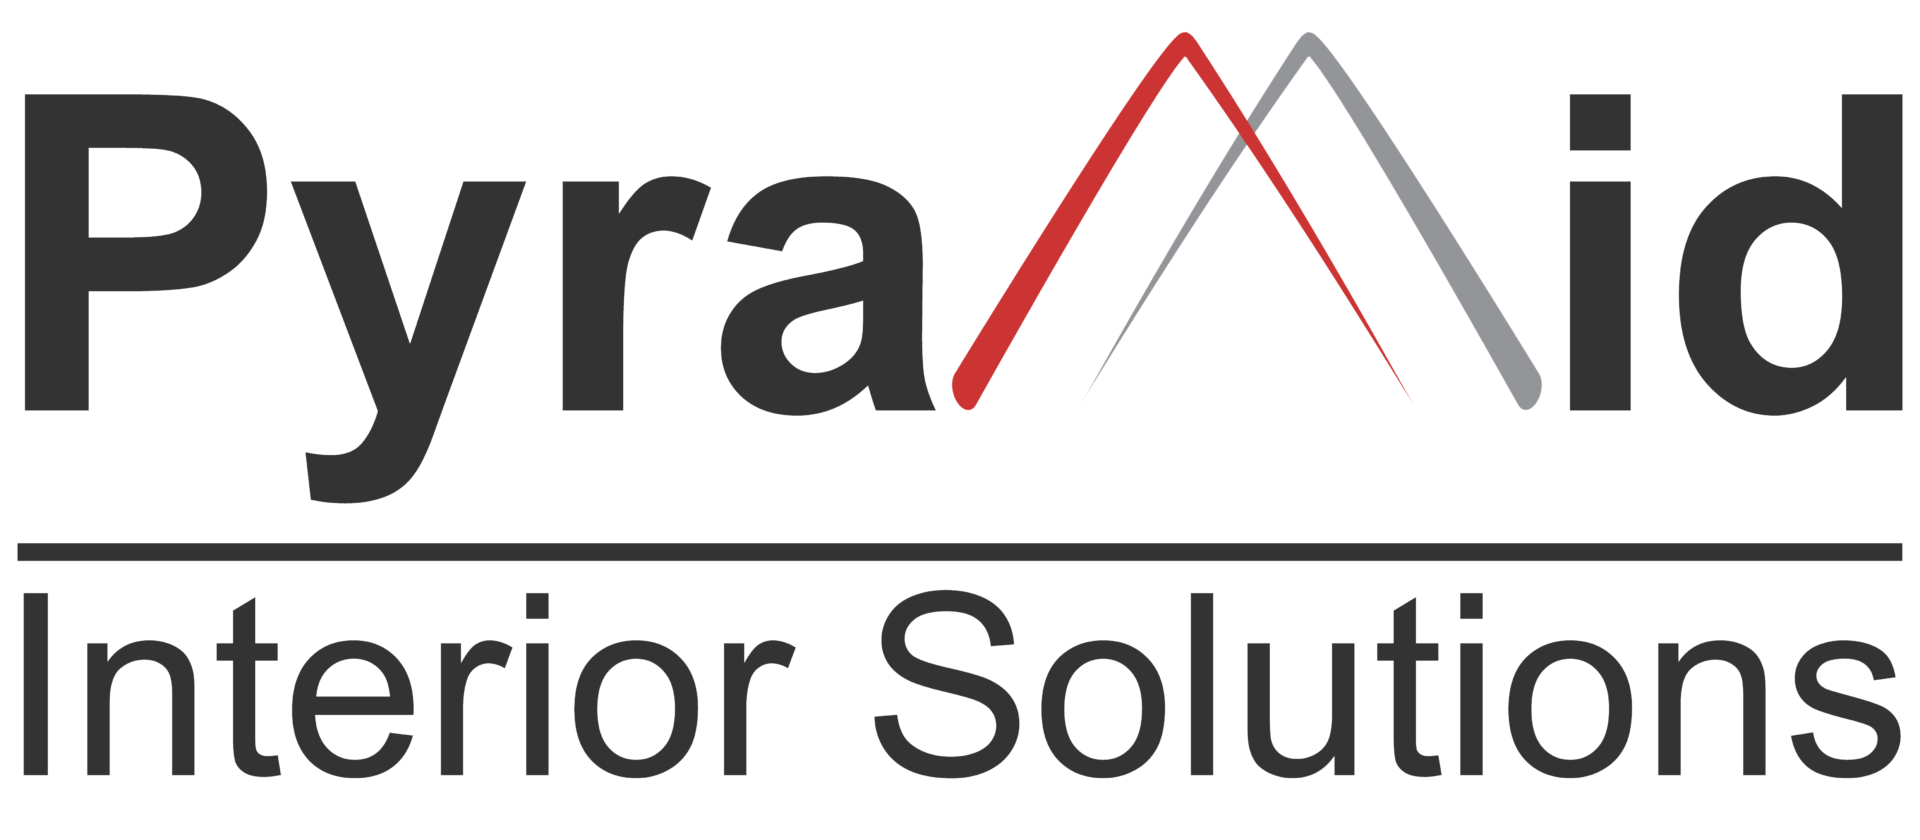 Pyramid Interior Solutions Ltd